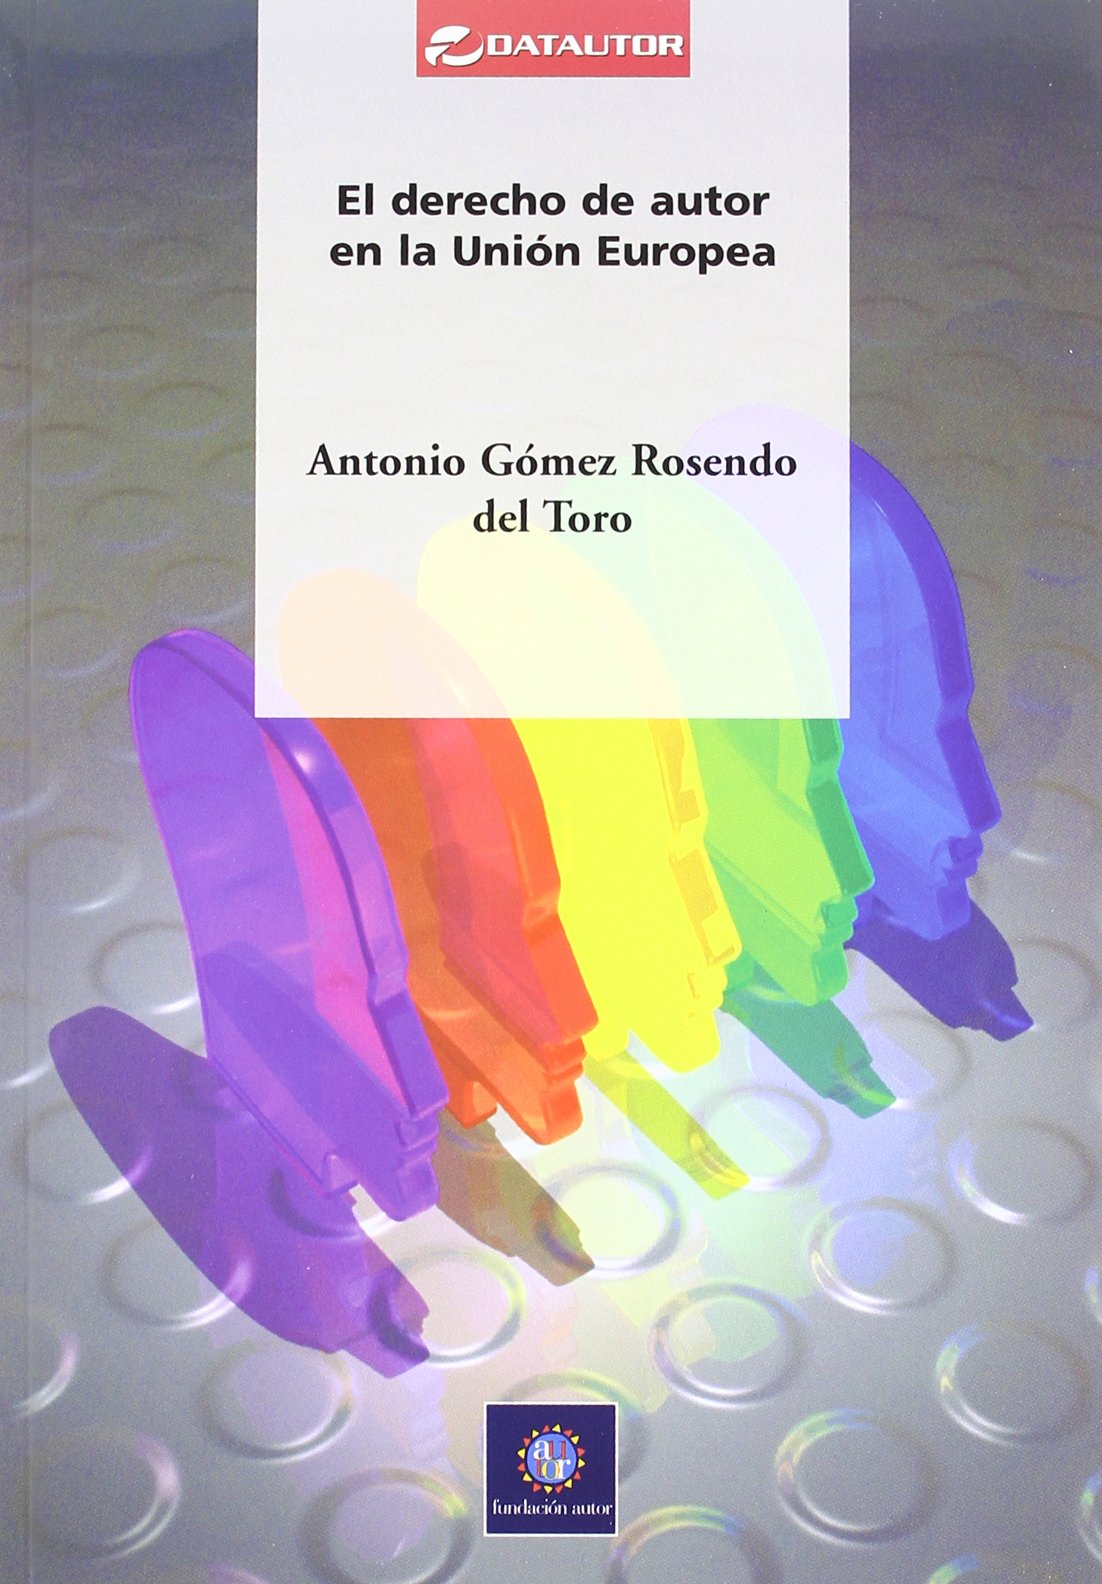 El Derecho de autor en la Unión Europea